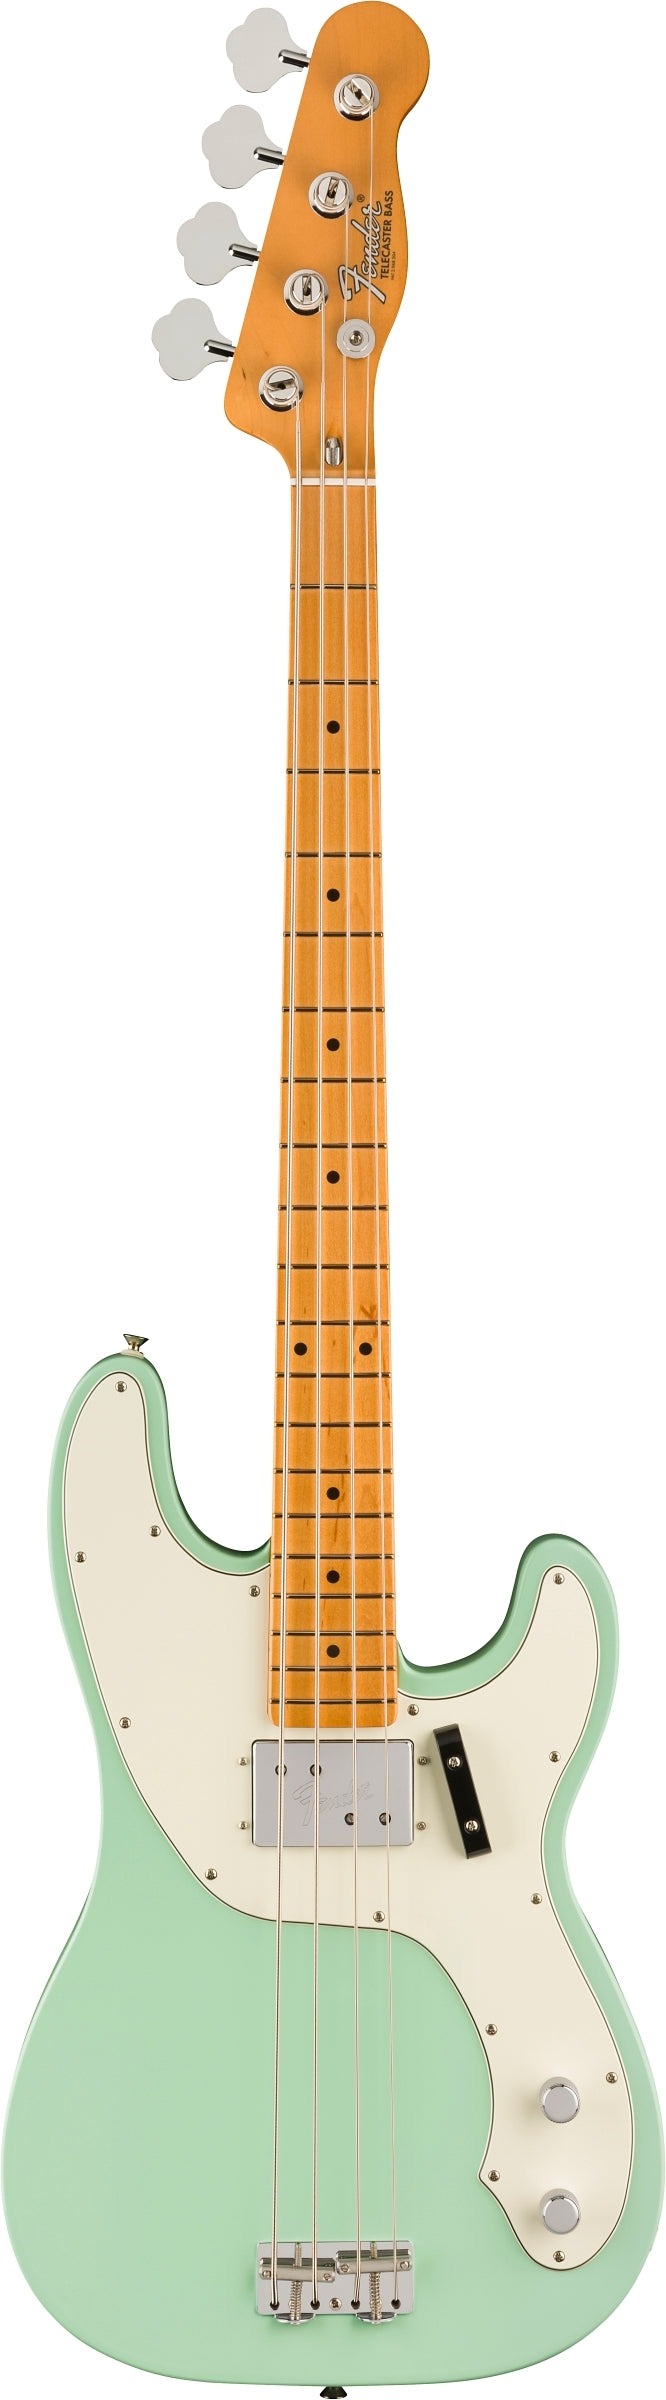 Fender Vintera II '70s 4-String Telecaster Bass - Surf Green